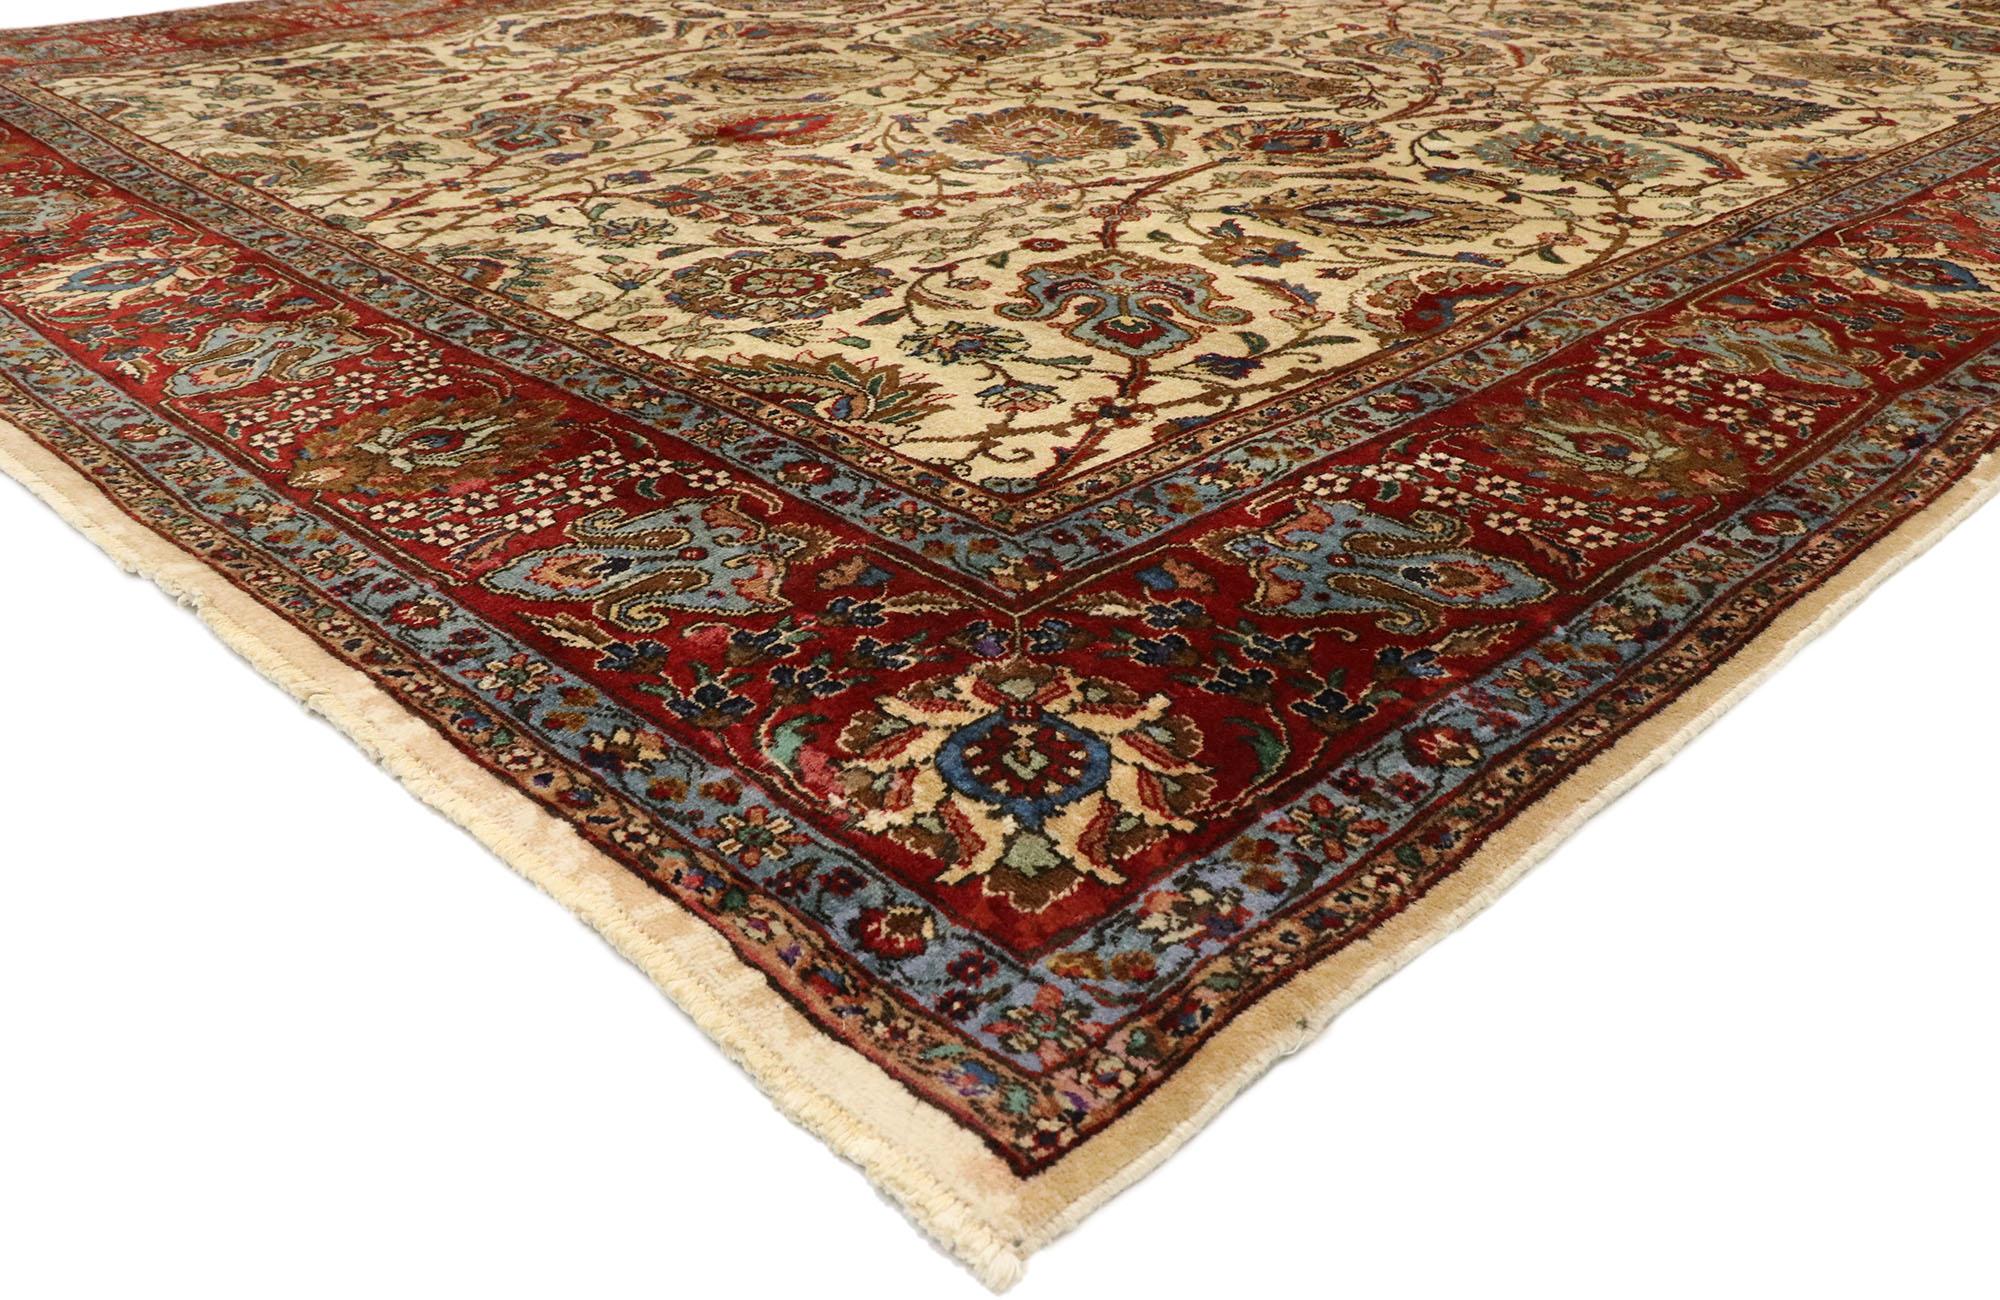 76409, tapis vintage Persian Tabriz Palace de style colonial américain. Avec son attrait intemporel, ses couleurs raffinées et ses éléments architecturaux, ce tapis de palais vintage persan Tabriz en laine nouée à la main s'intègre parfaitement aux